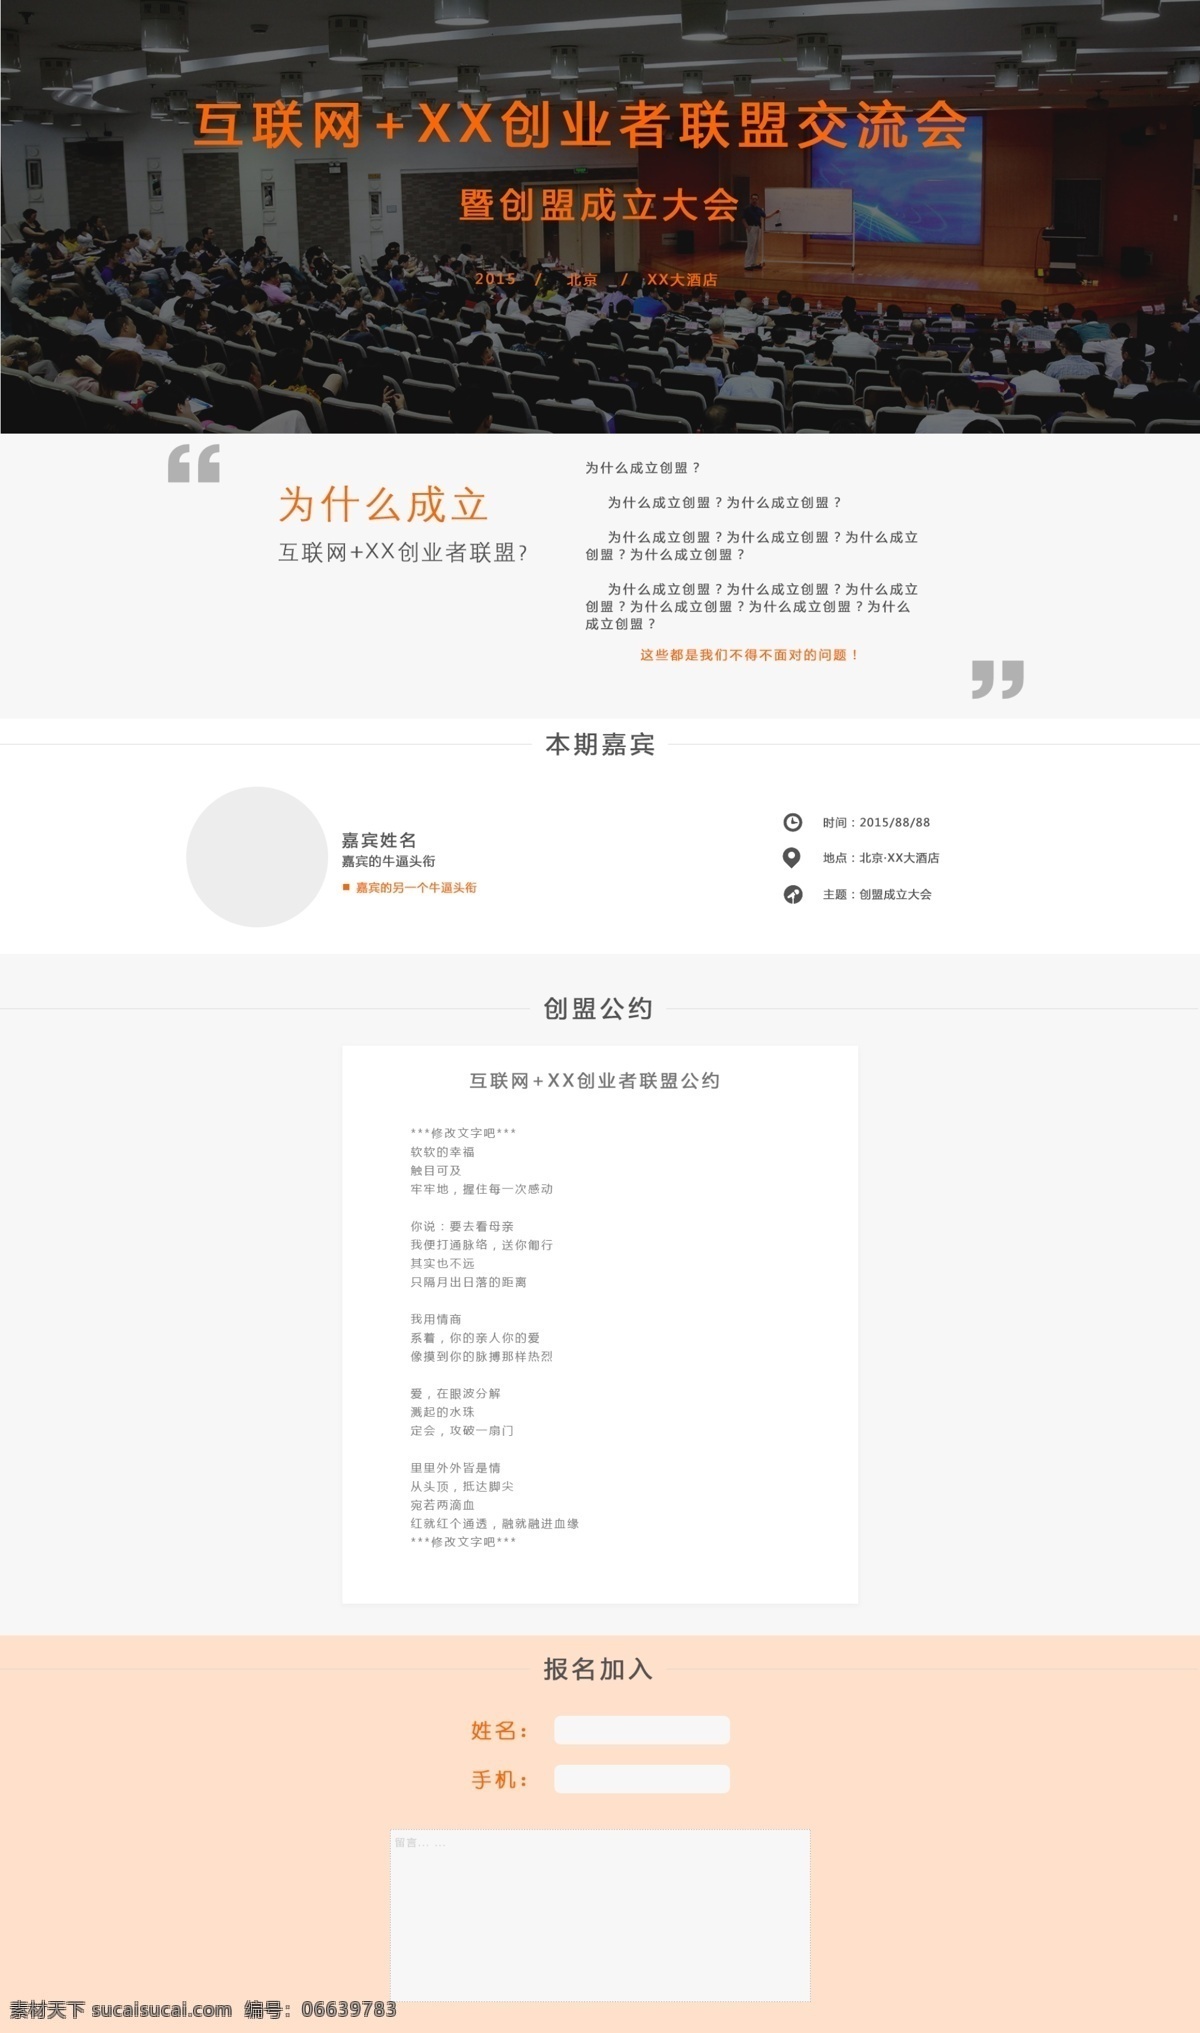 互联网 xx 创业者 联盟 成立 专题 创业者联盟 阶梯教室 报名专题页 联盟演讲 web 界面设计 中文模板 白色